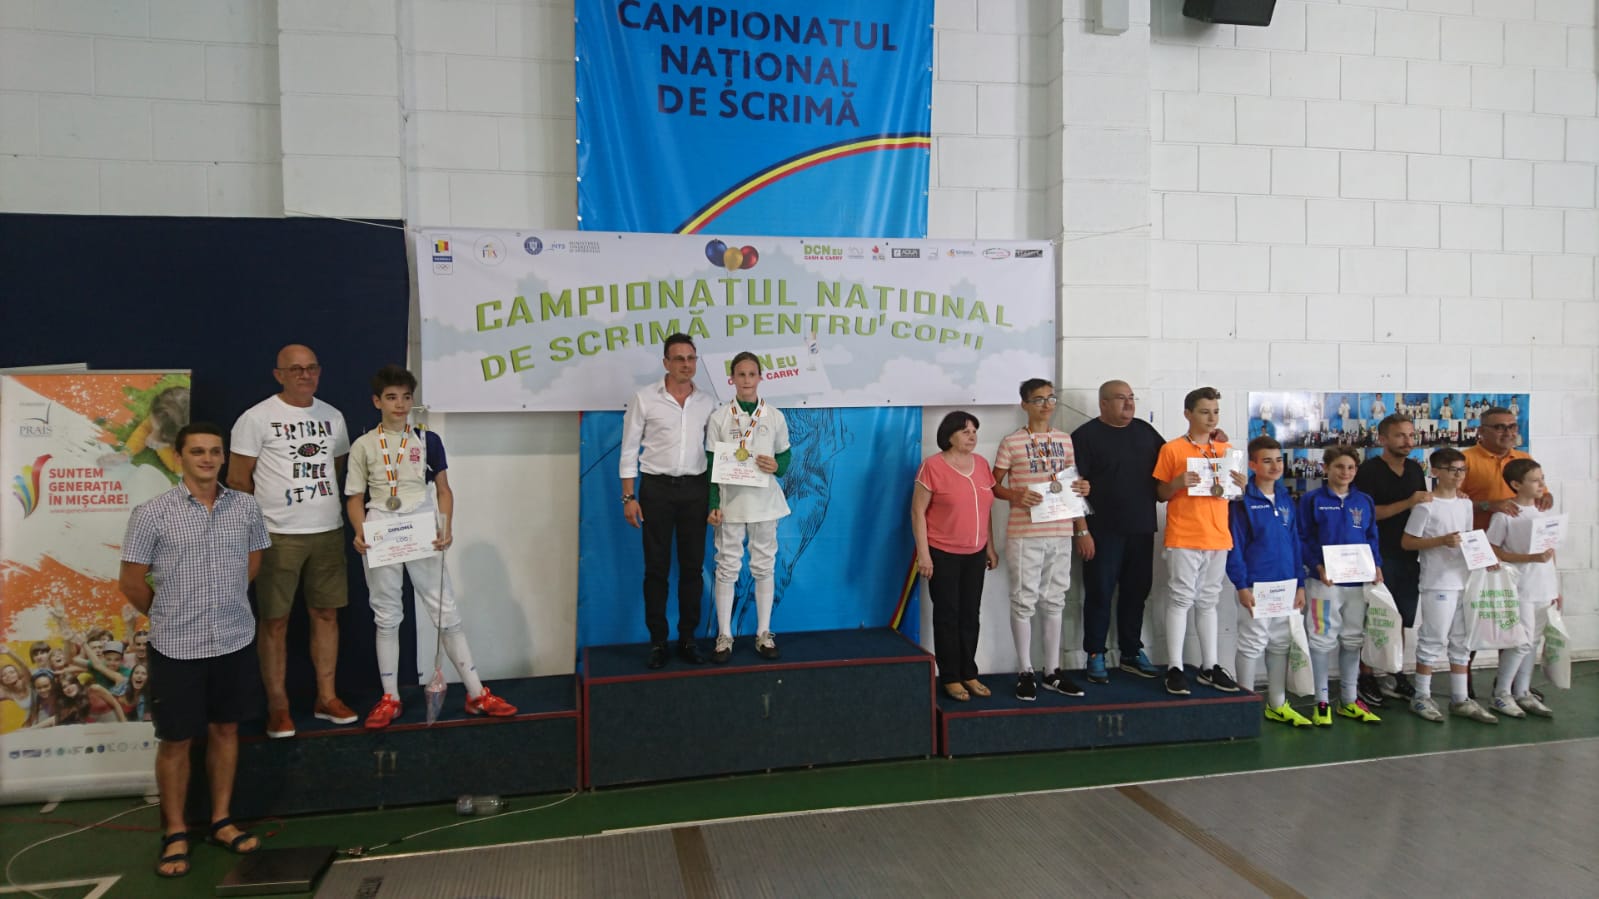 Campionatul Național de scrimă pentru copii, ediția 2018, ziua 5, proba 9: floretă masculin 12-13 ani